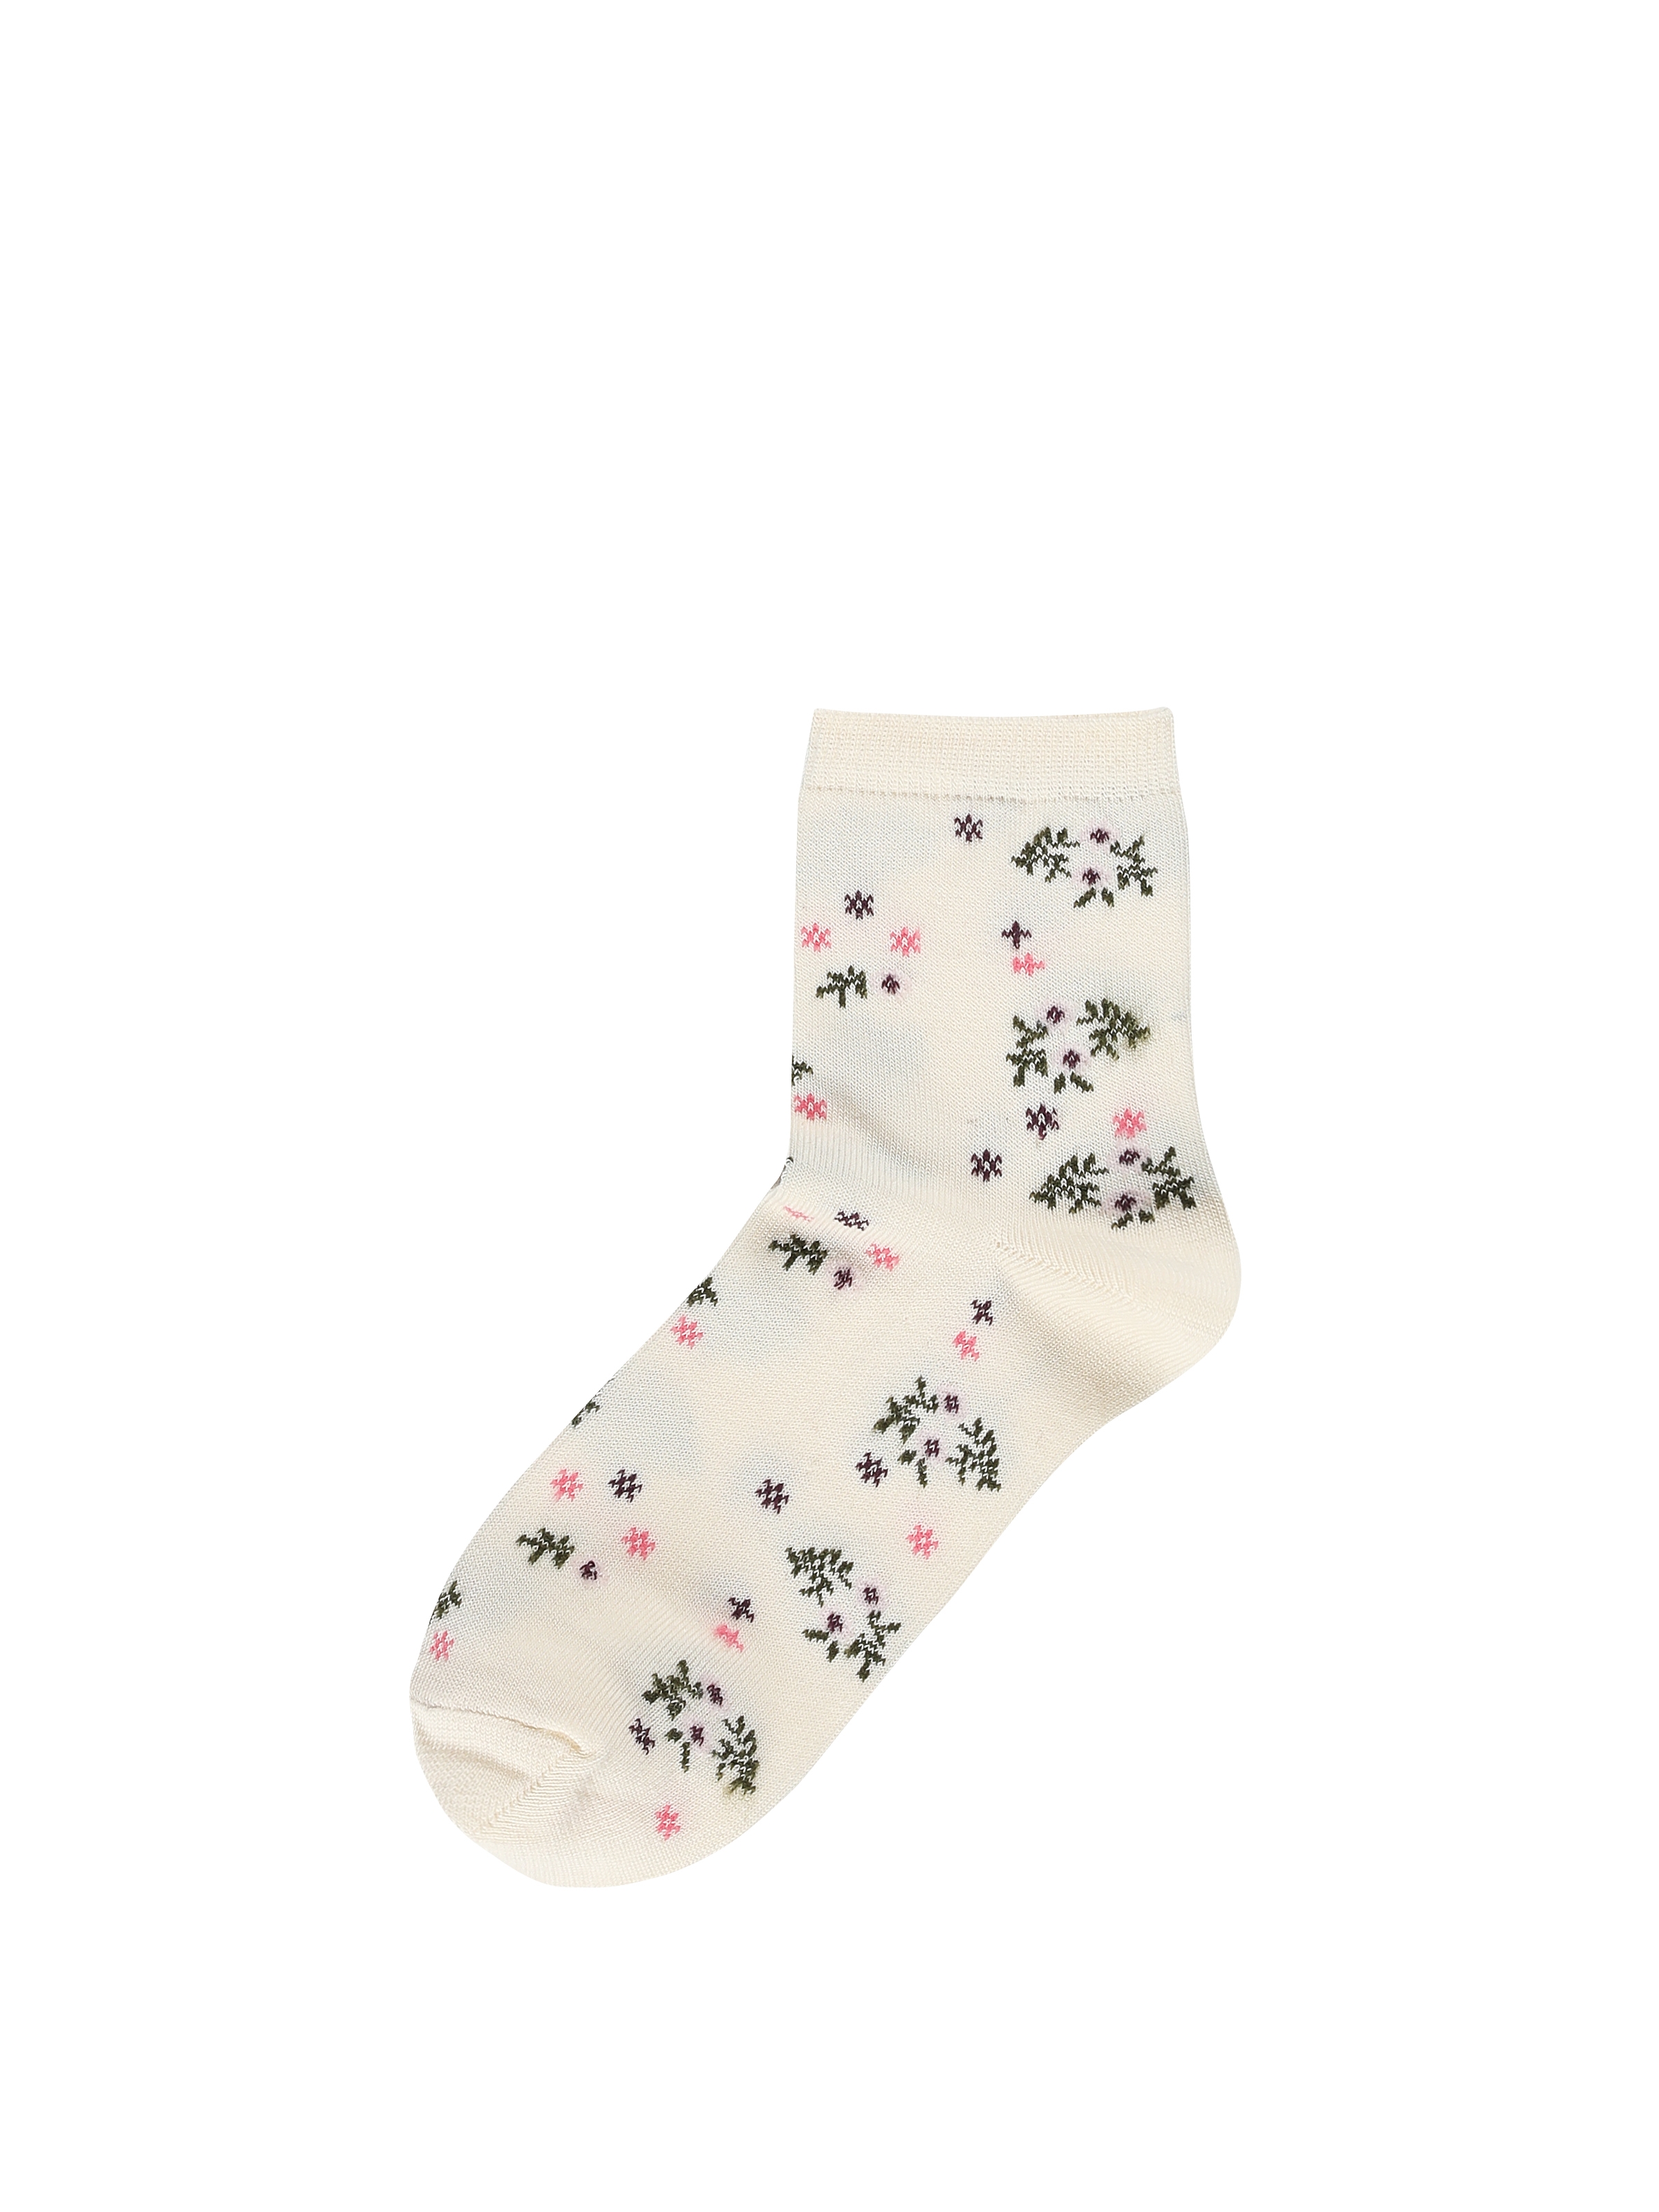 Показати інформацію про Шкарпетки Жіночі Блідо-Жовті Cl1060362